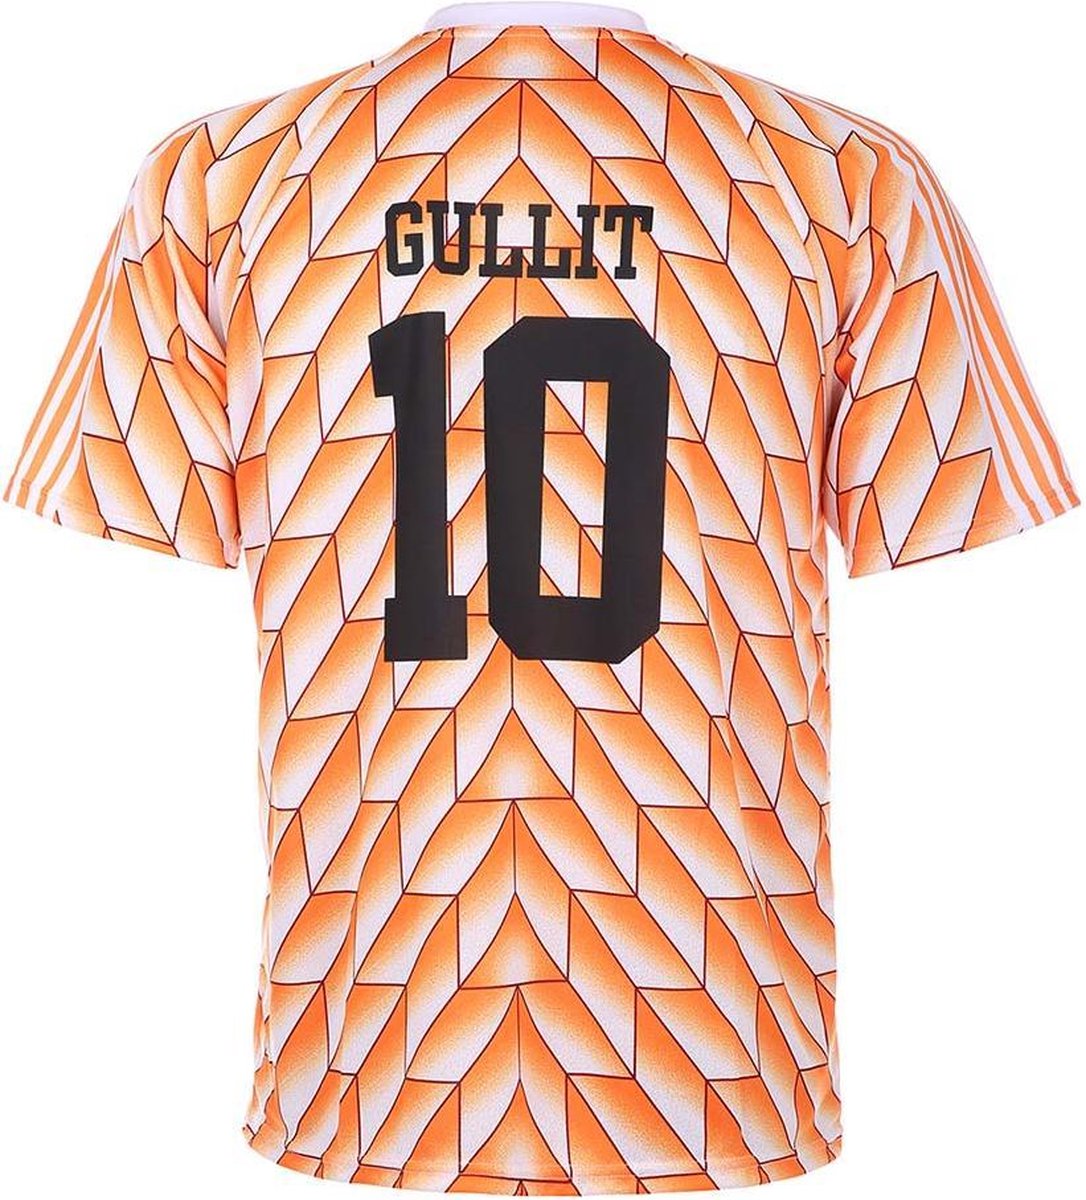 EK 88 Voetbalshirt Gullit 1988 - Oranje - Voetbalshirts Kinderen - 92 |  bol.com